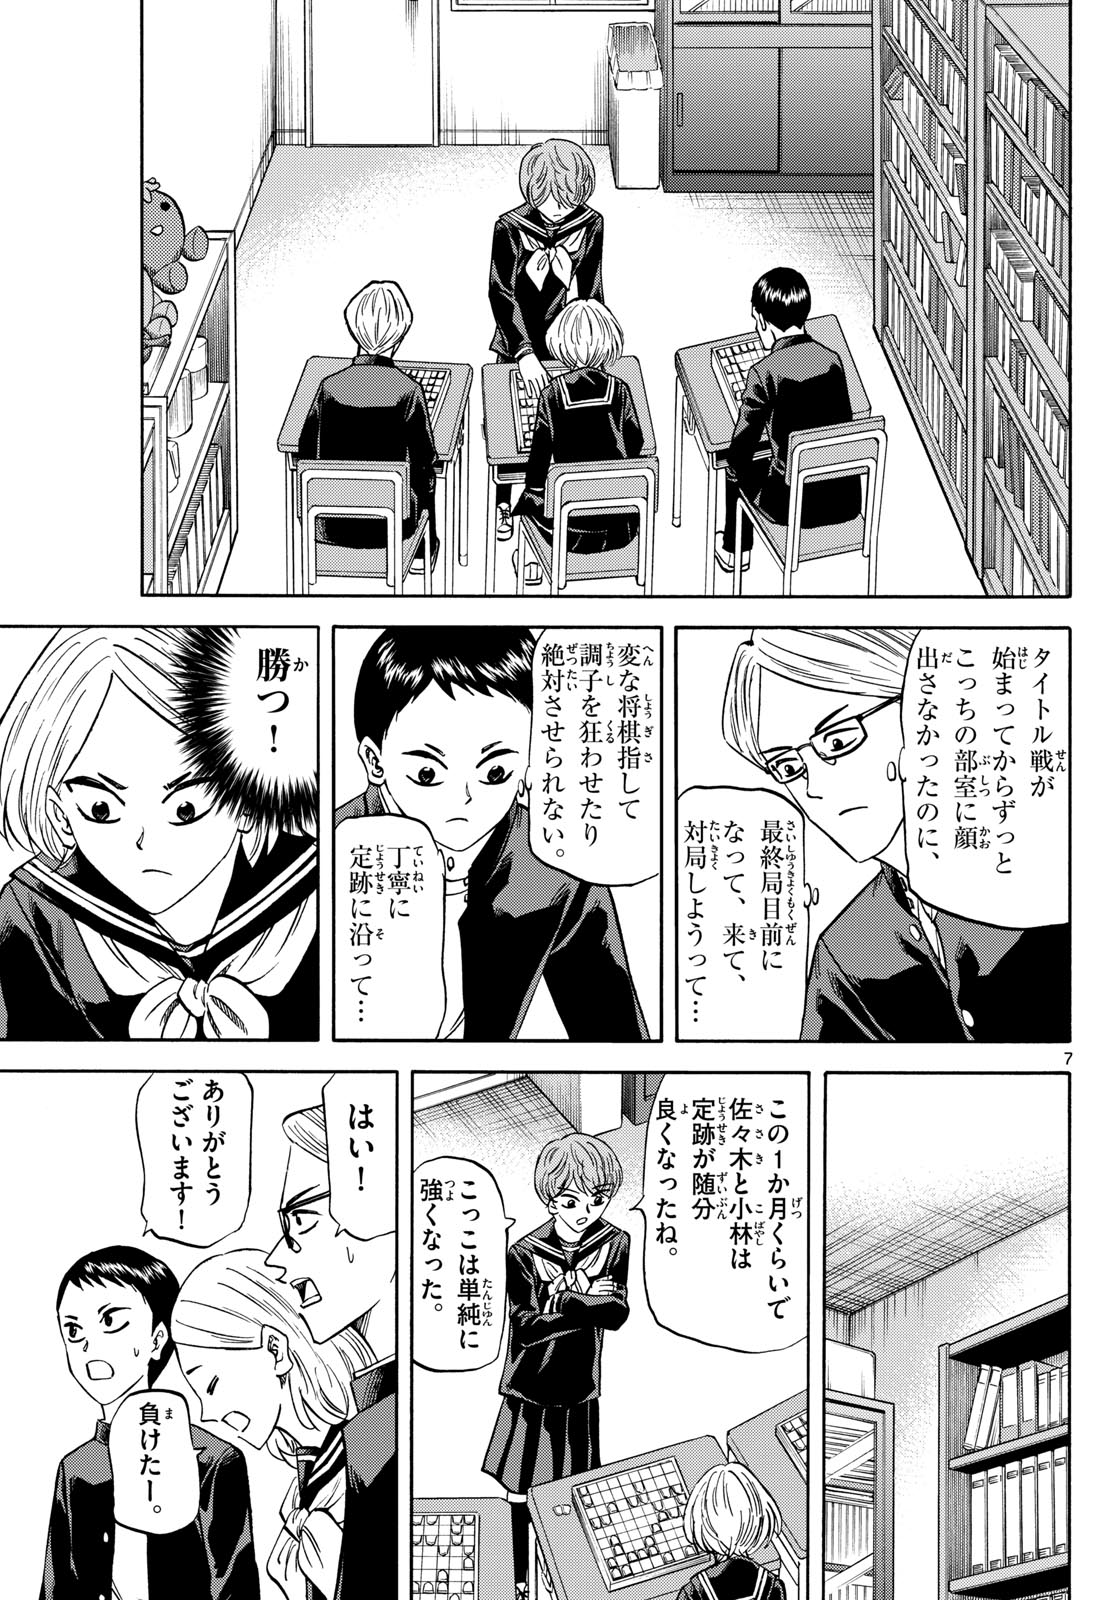 Tatsu to Ichigo - Chapter 171 - Page 7